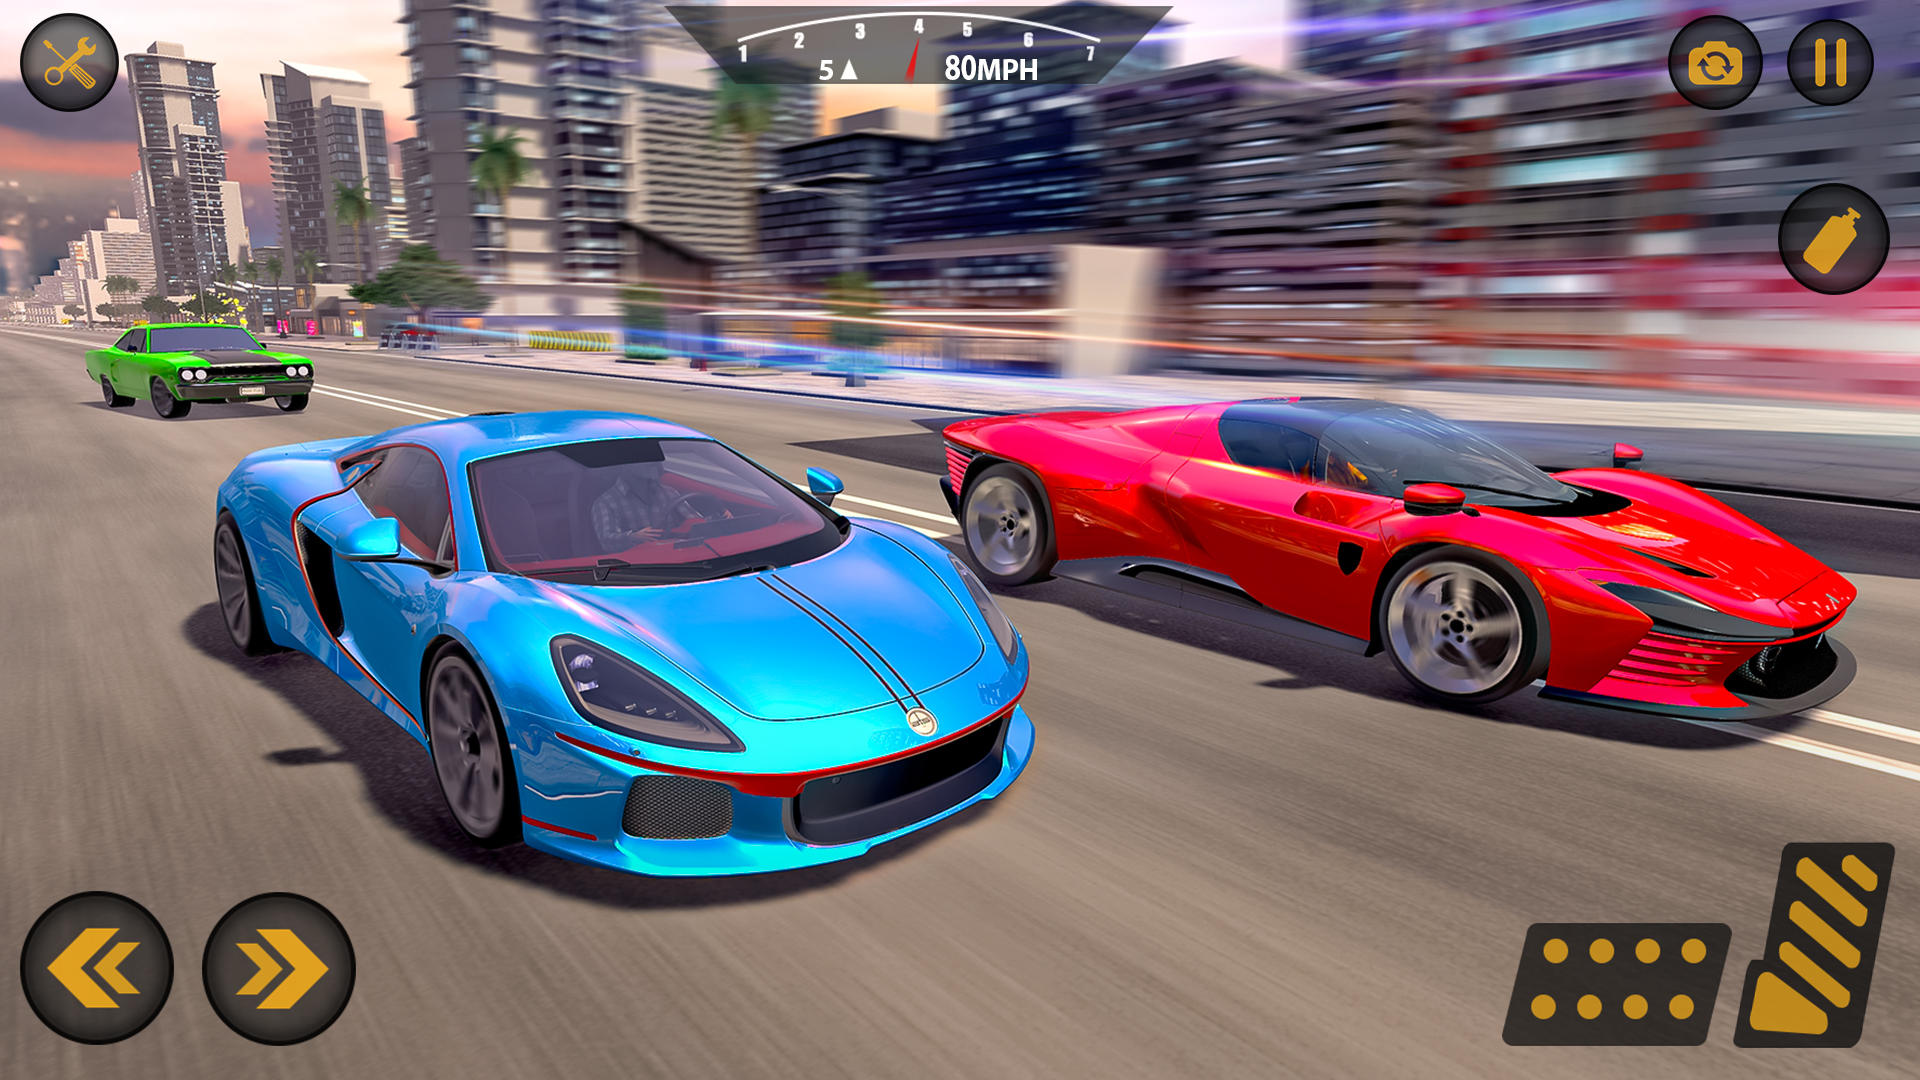 Screenshot 1 of Spiele zum Autofahren 5.0